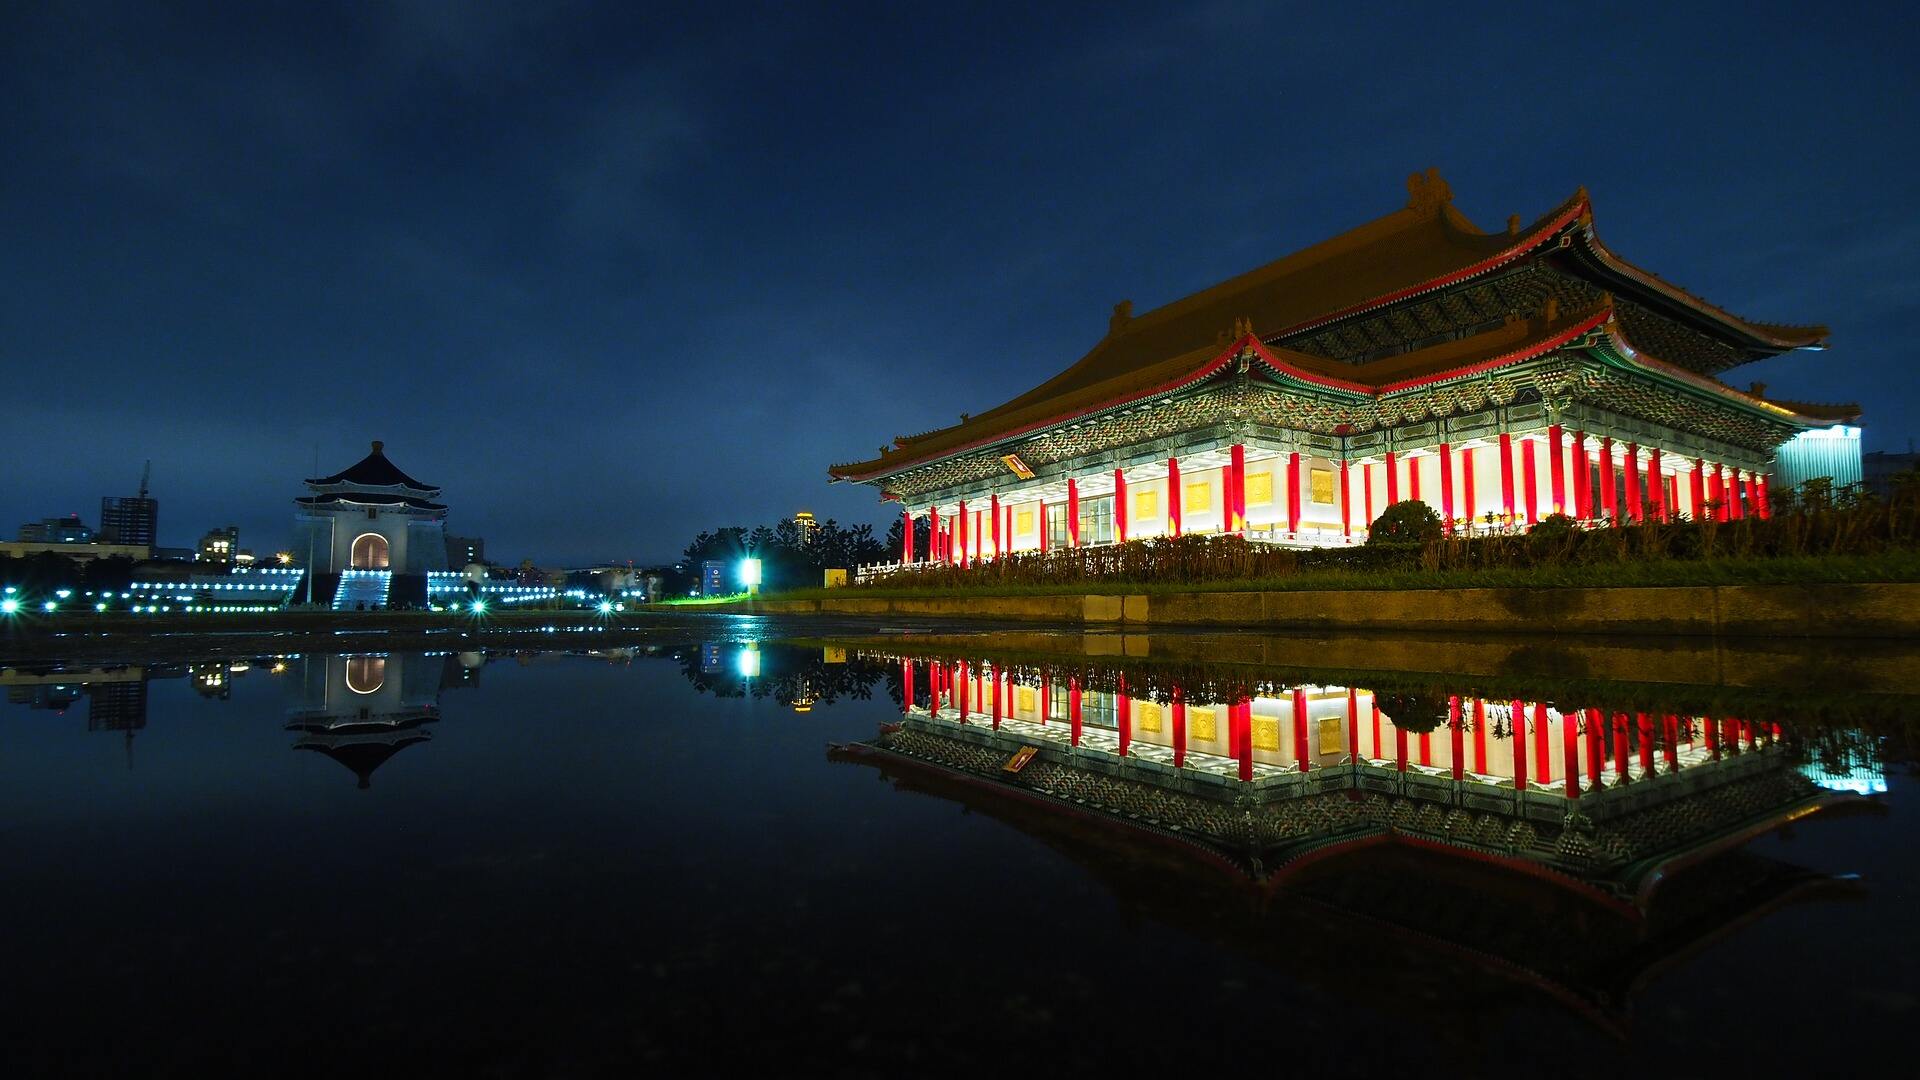 Chiang Kai-shek Memorial Hall at Night